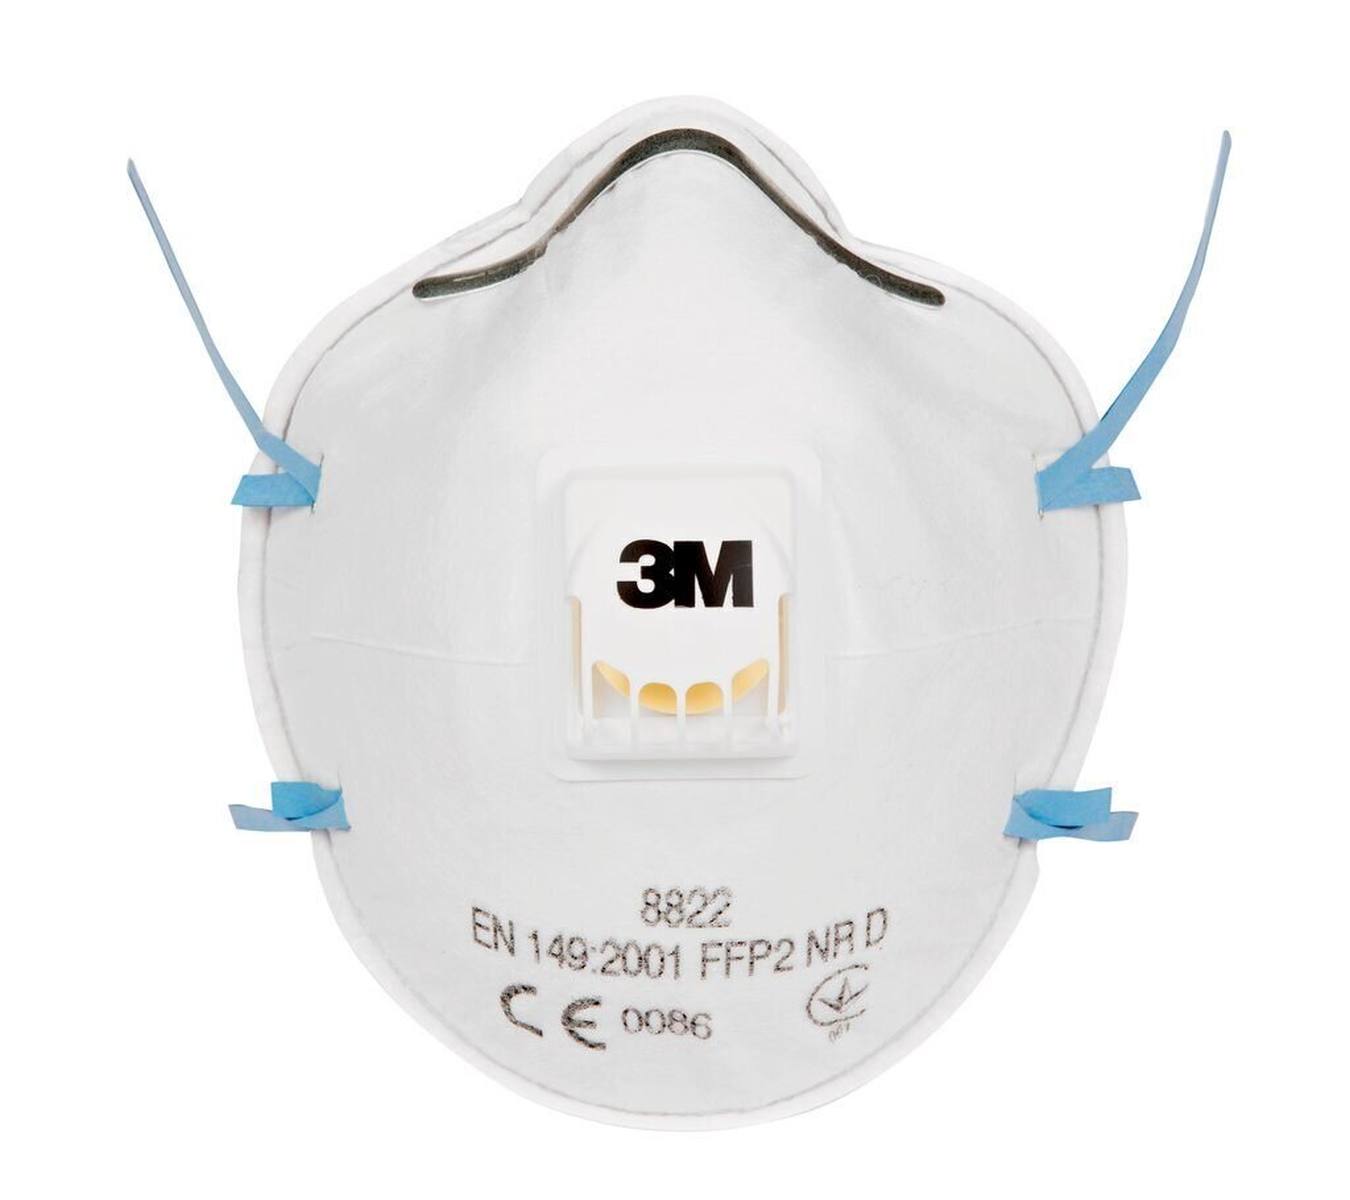 Respiratore 3M 8822 FFP2 con valvola di espirazione a flusso freddo, fino a 10 volte il valore limite